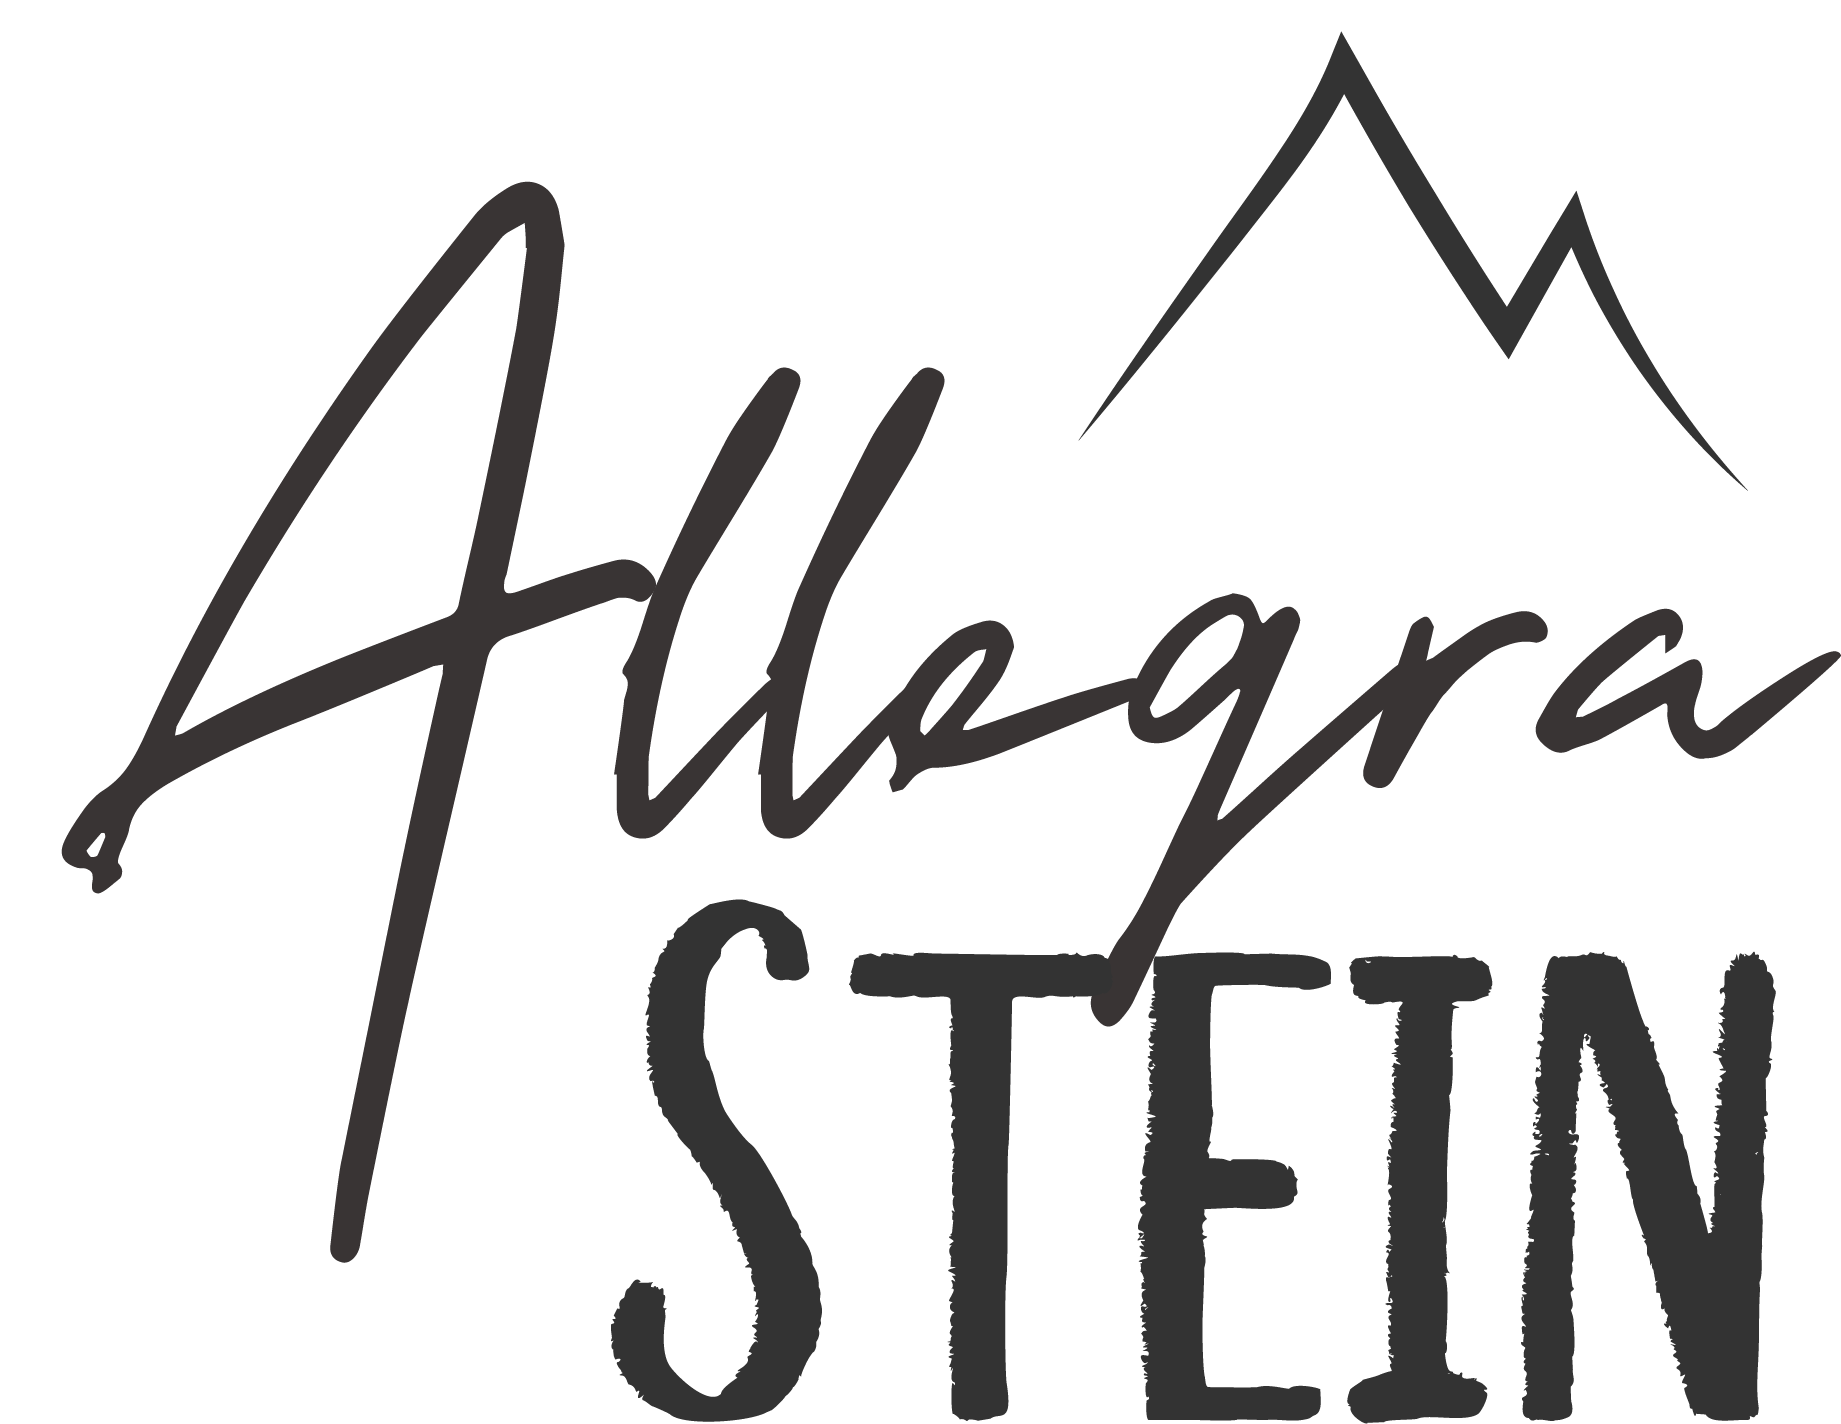 Allegra Stein